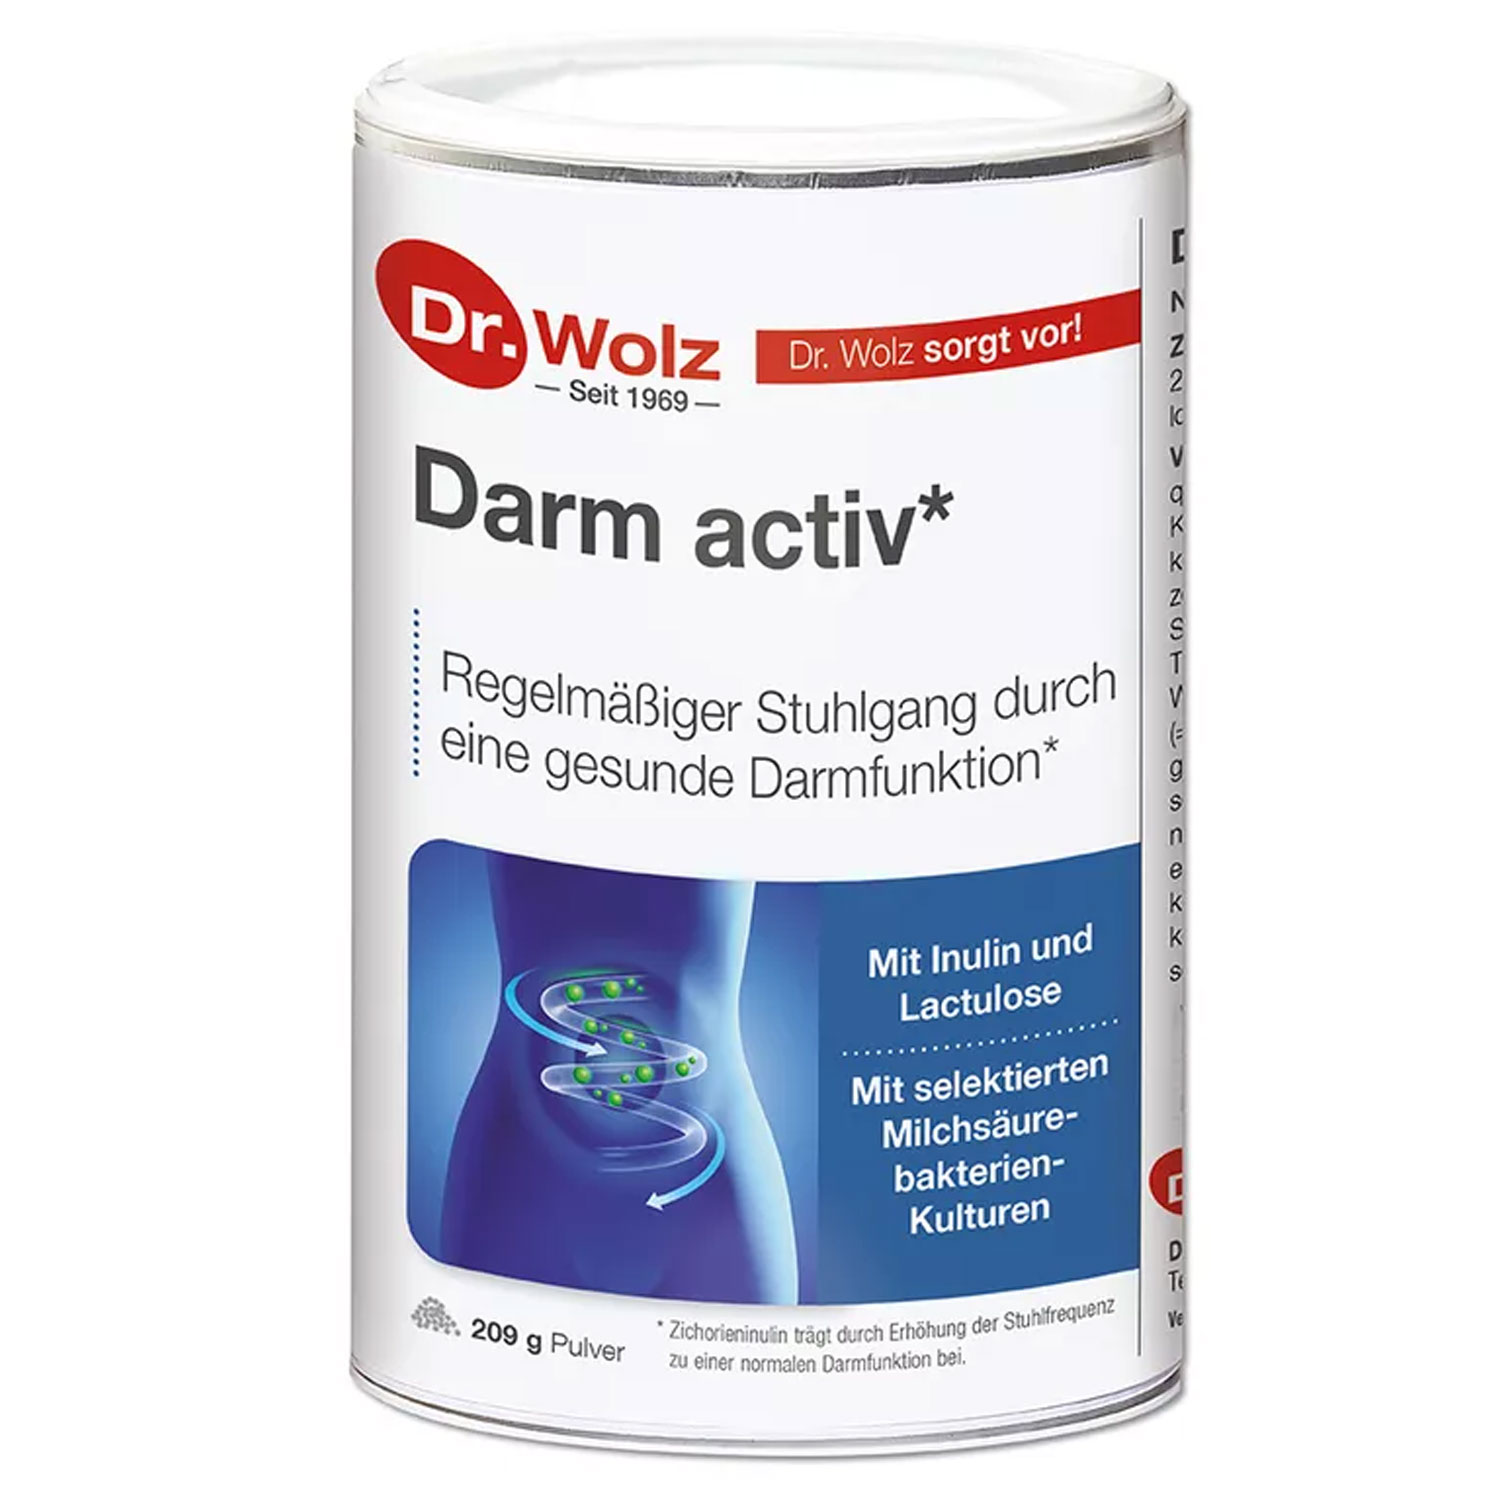 Darm activ von Dr. Wolz - 209 g